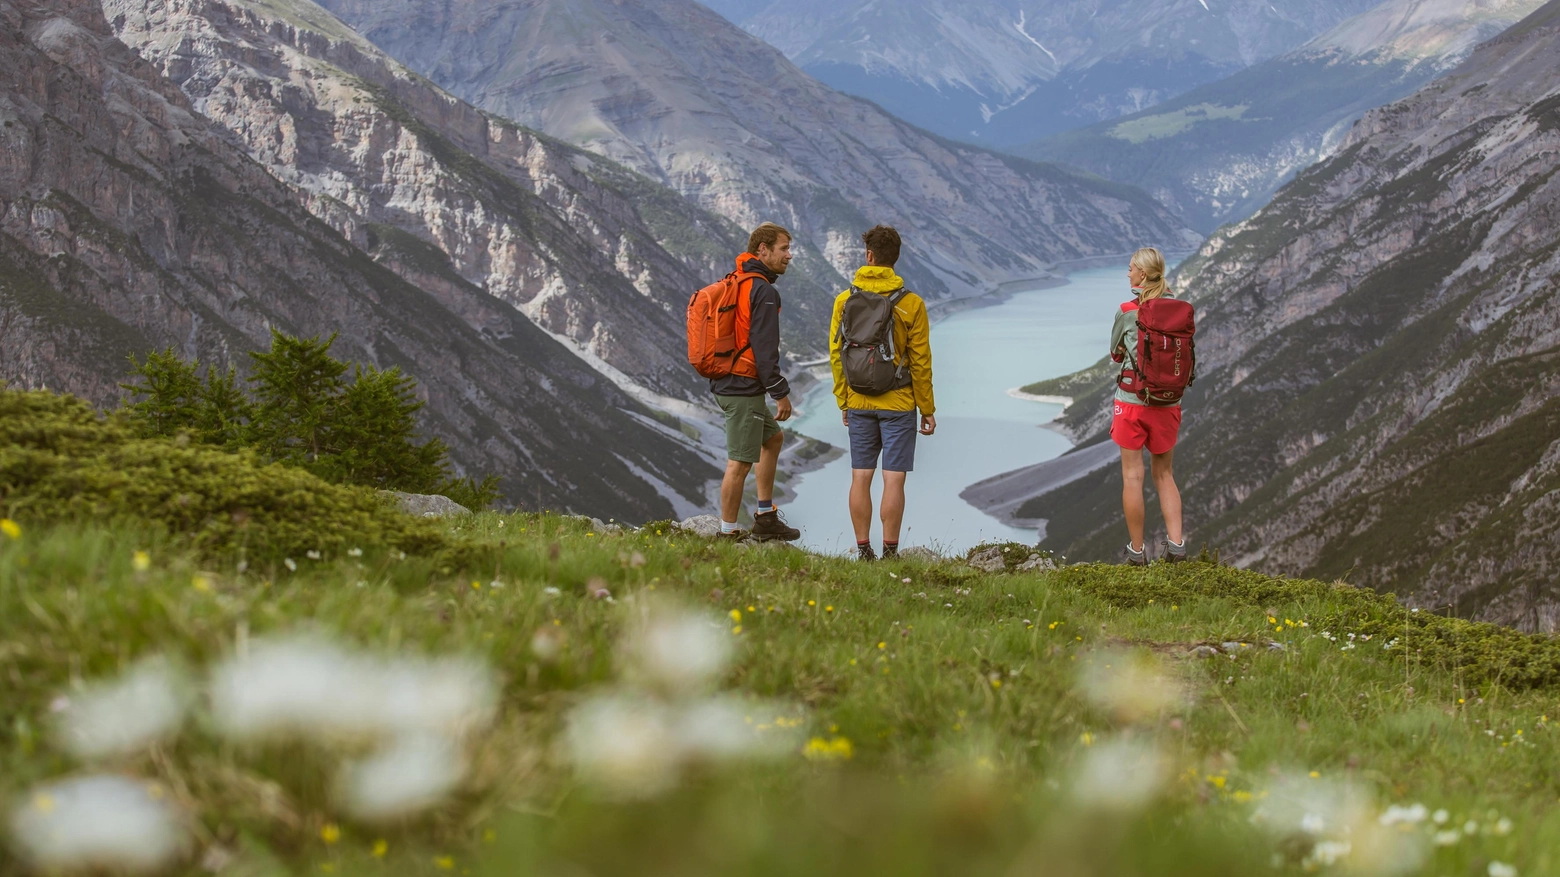 Livigno offre numerose attività outdoor in estate, tra cui mountain bike, trekking, equitazione e golf. Con 1.500 km di percorsi, escursioni per tutti i gusti e lago per sport acquatici, la località valtellinese è meta ideale per chi ama la natura e l'avventura.